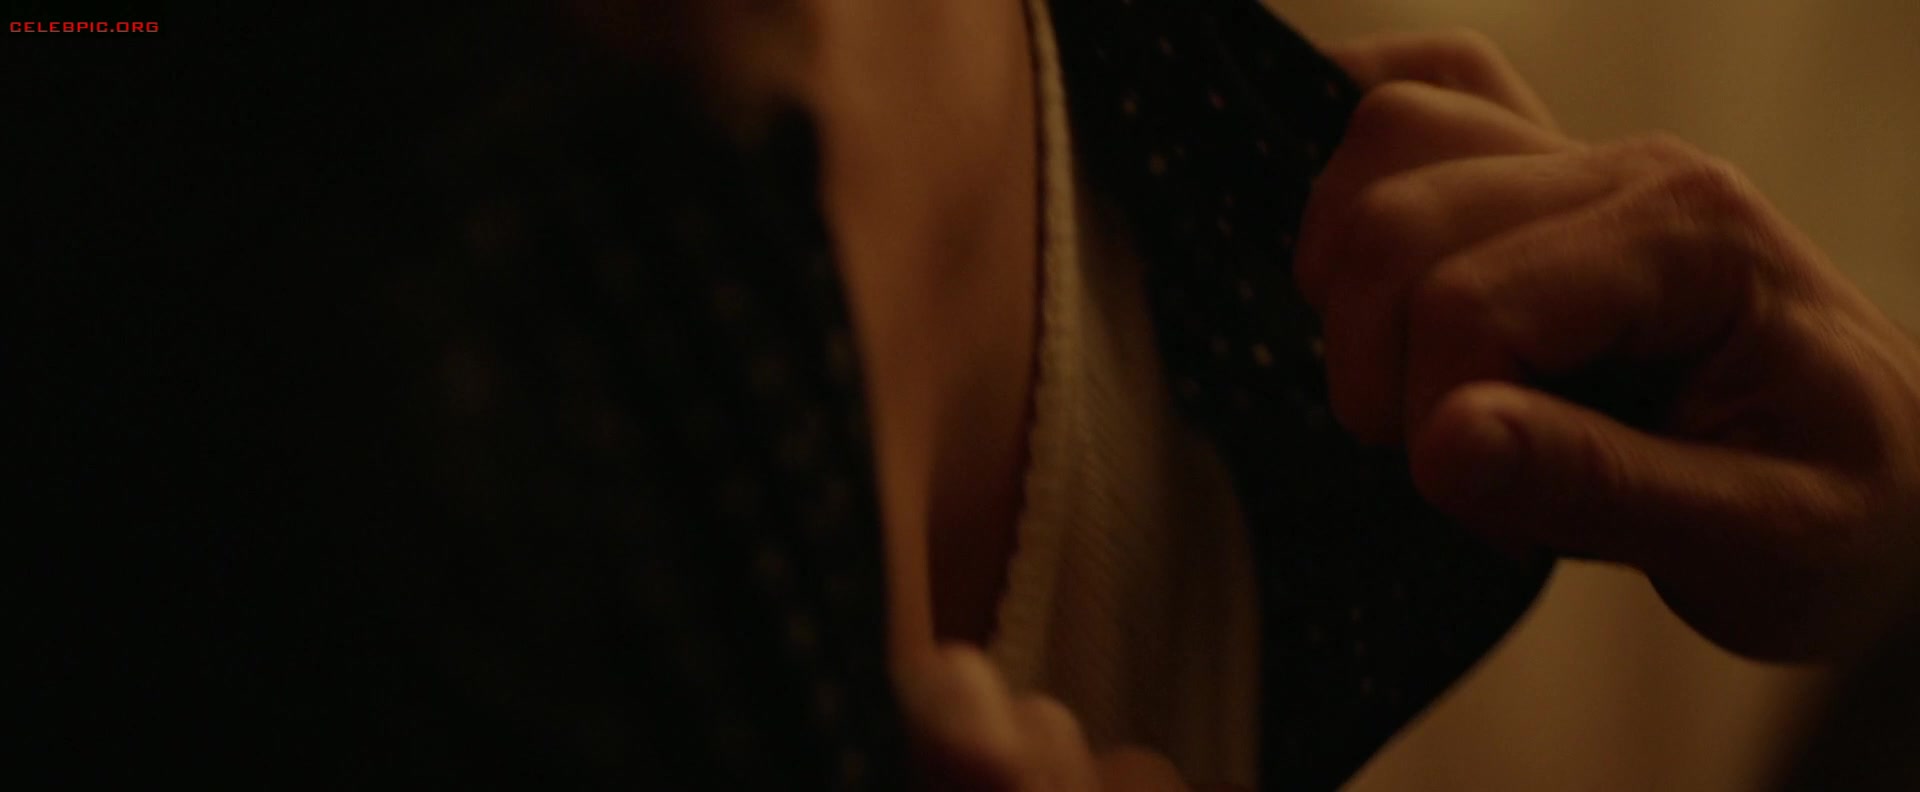 Gemma Arterton - The Escape 1080p (1) 0925.jpg